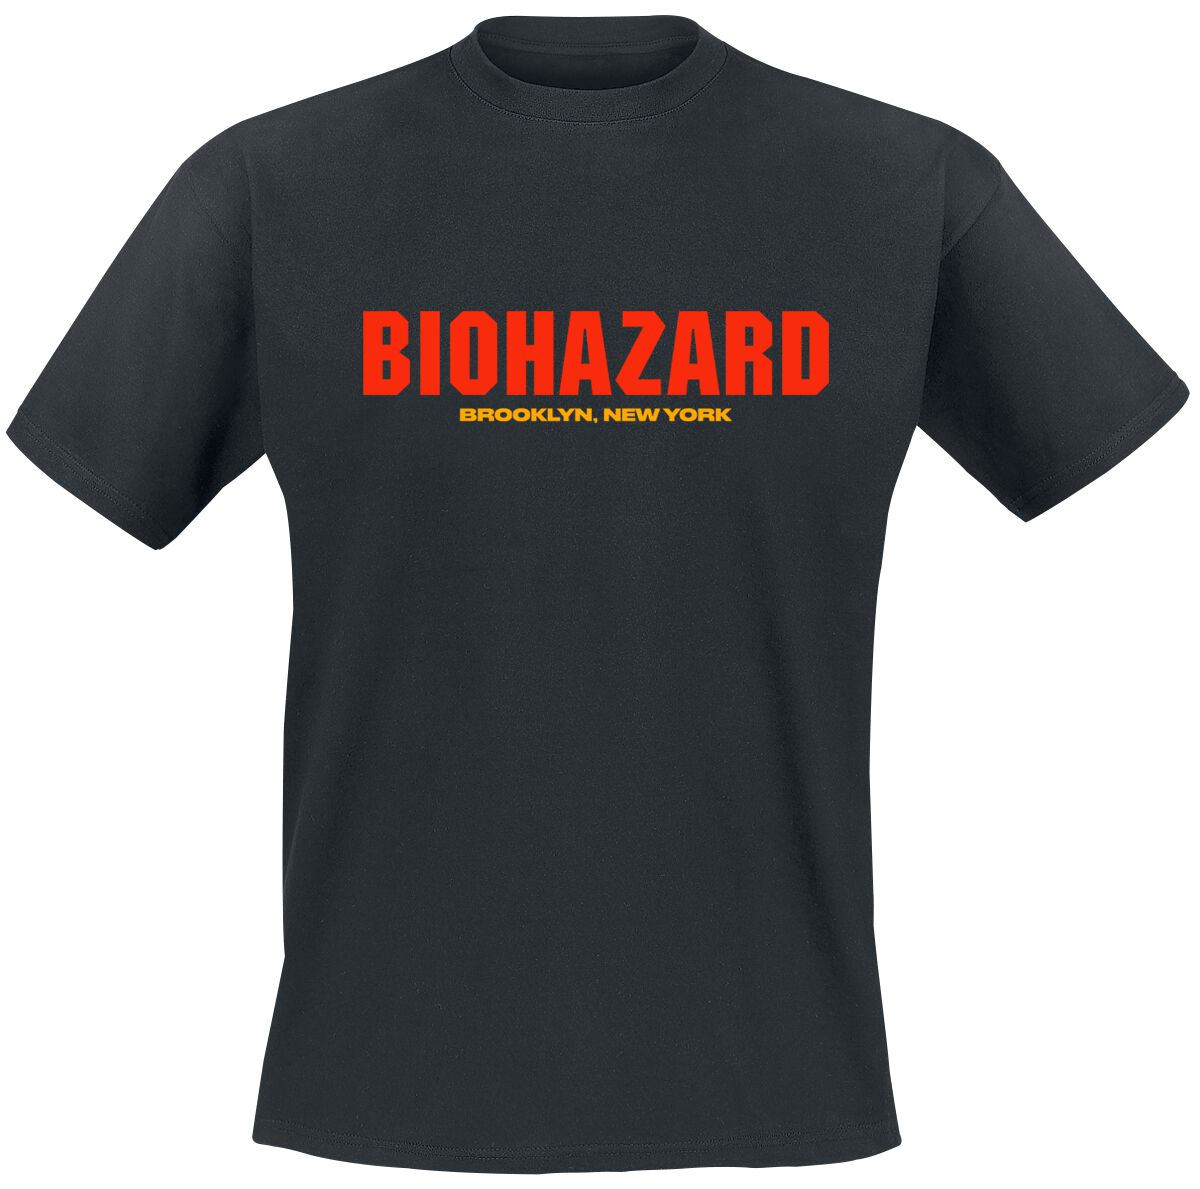 Biohazard T-Shirt - Urban discipline - S bis 4XL - für Männer - Größe XL - schwarz  - Lizenziertes Merchandise!